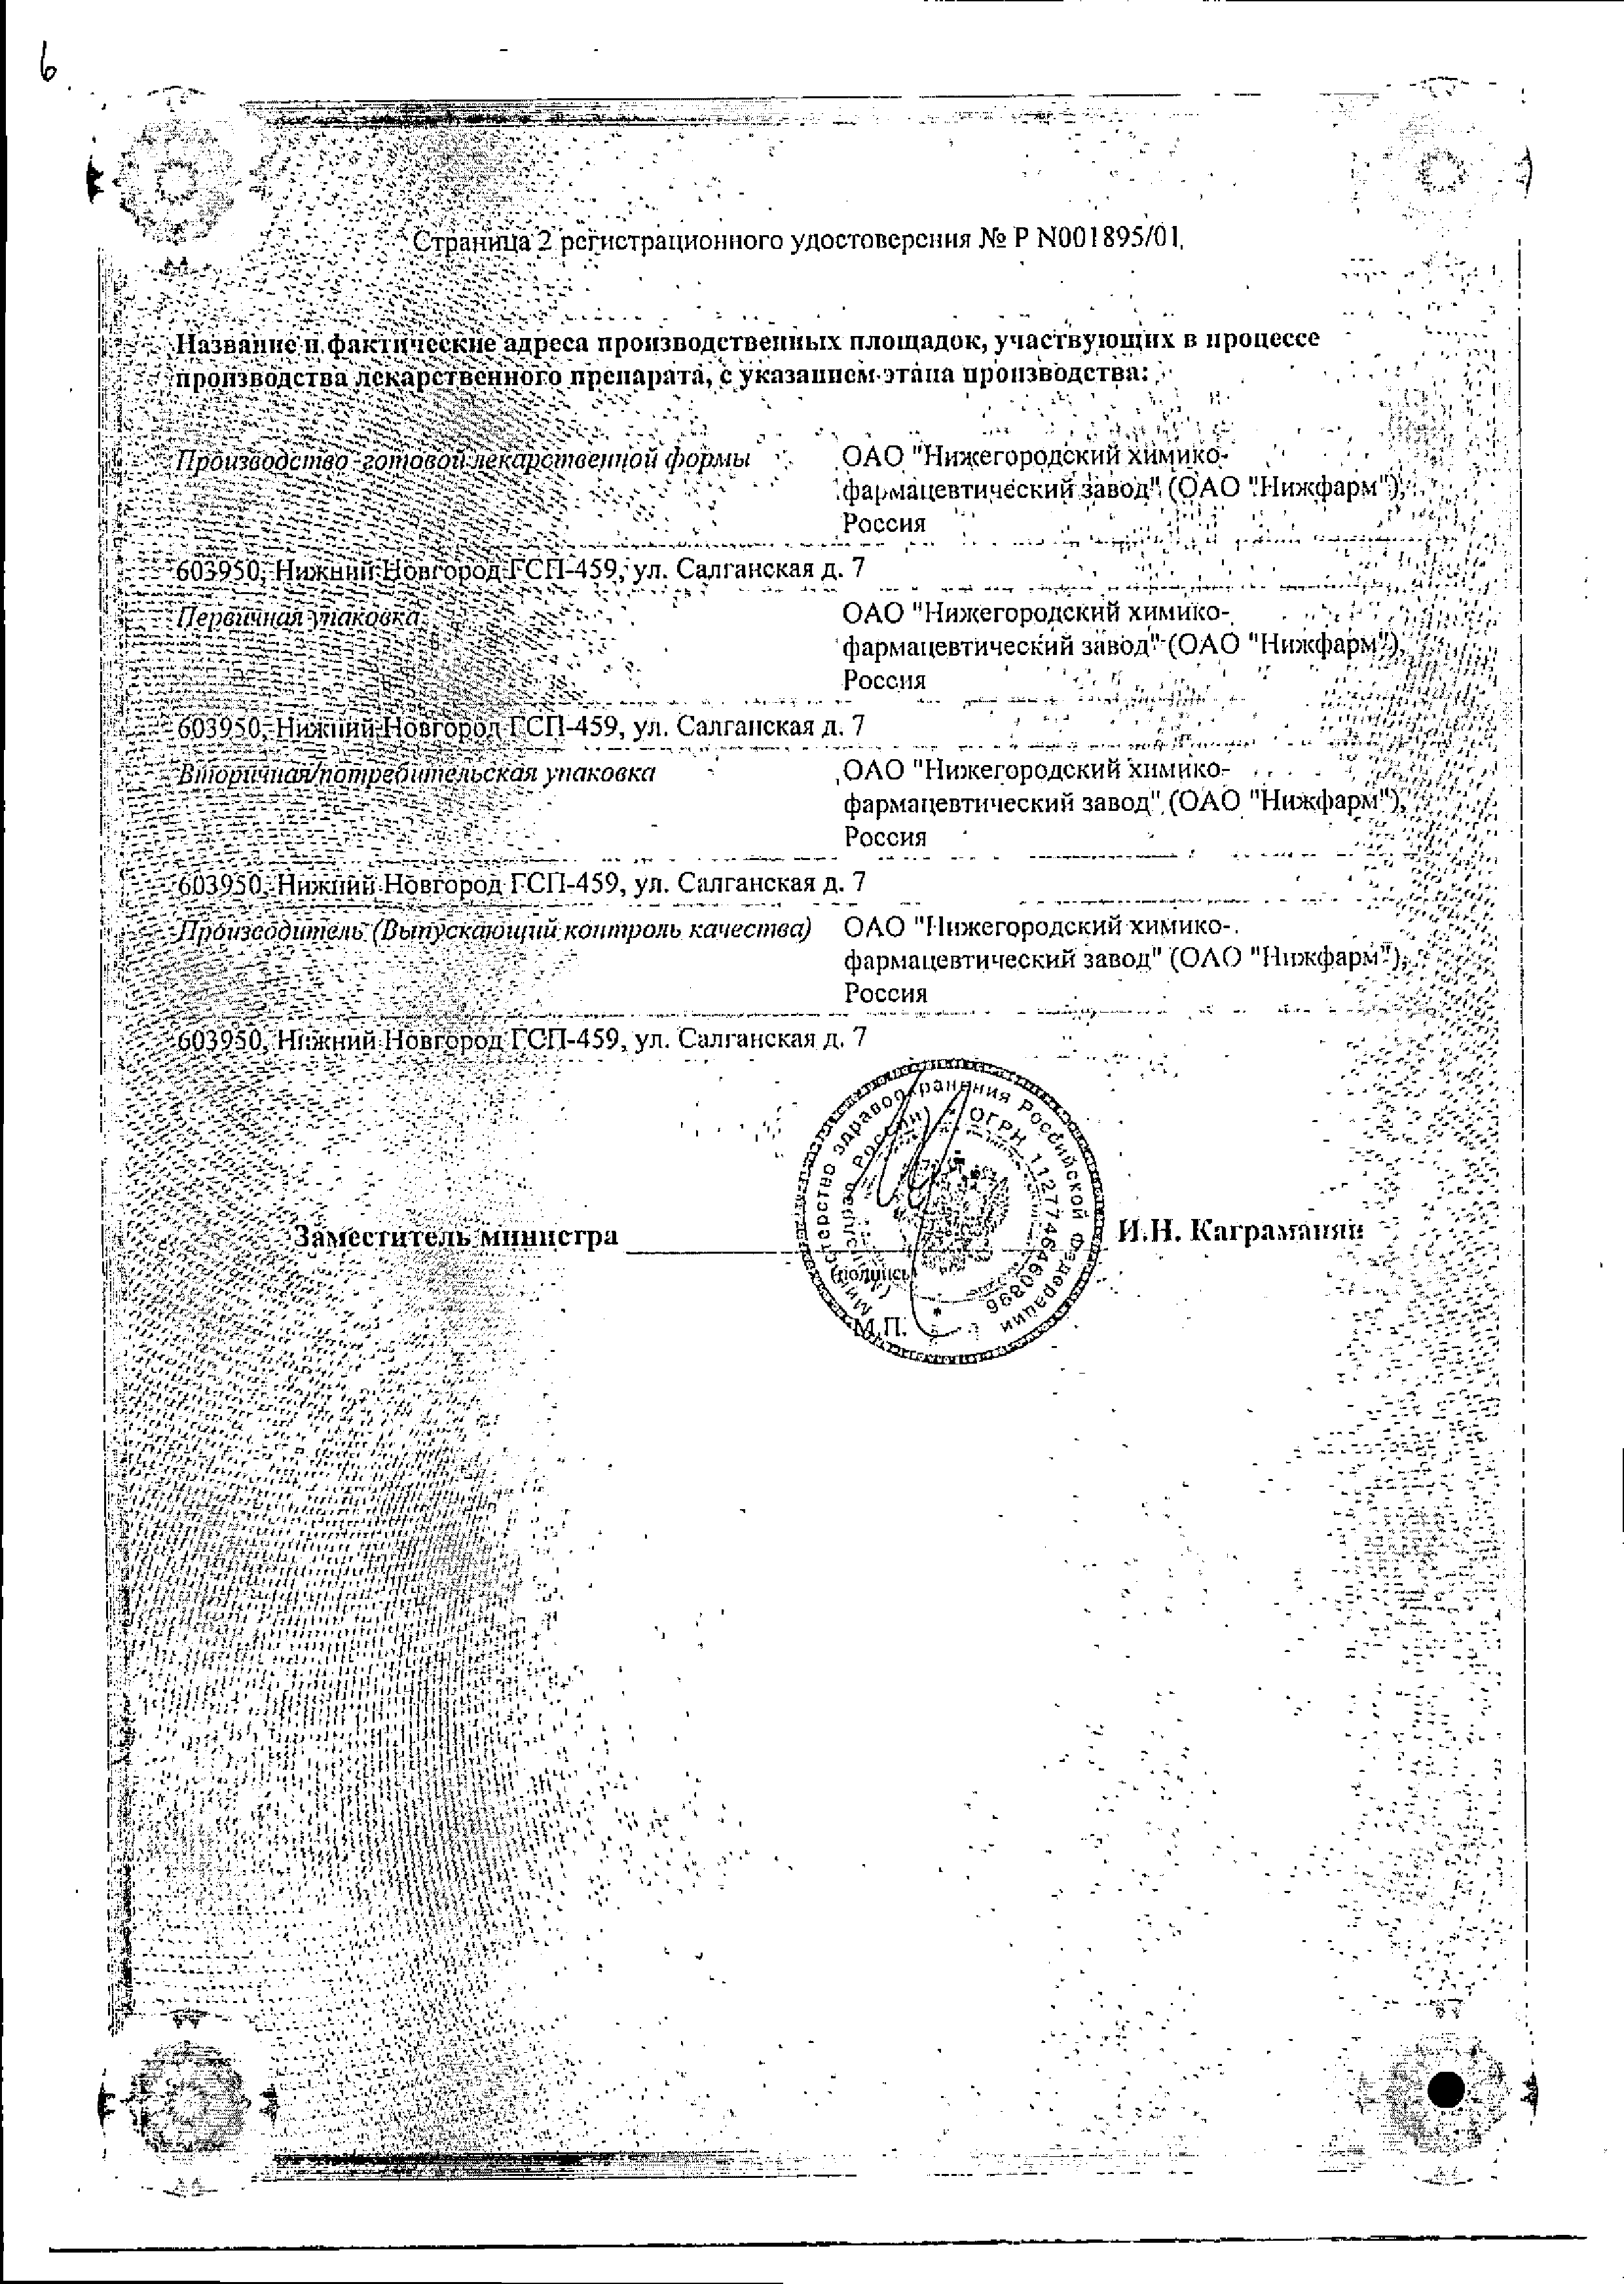 Бисакодил-Нижфарм сертификат